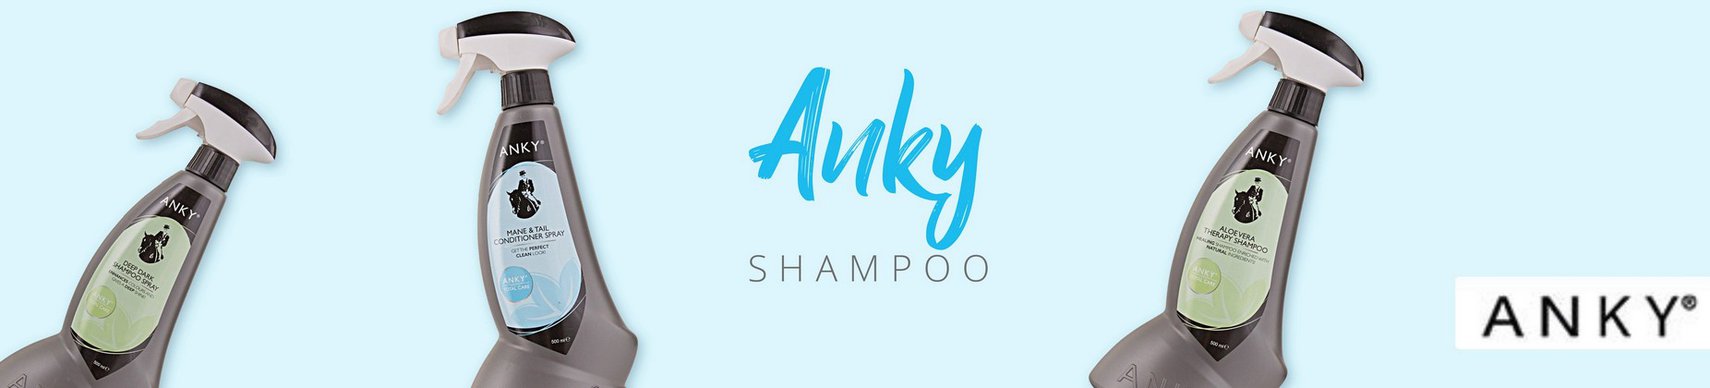 Merk_Anky_Shampoo.jpg